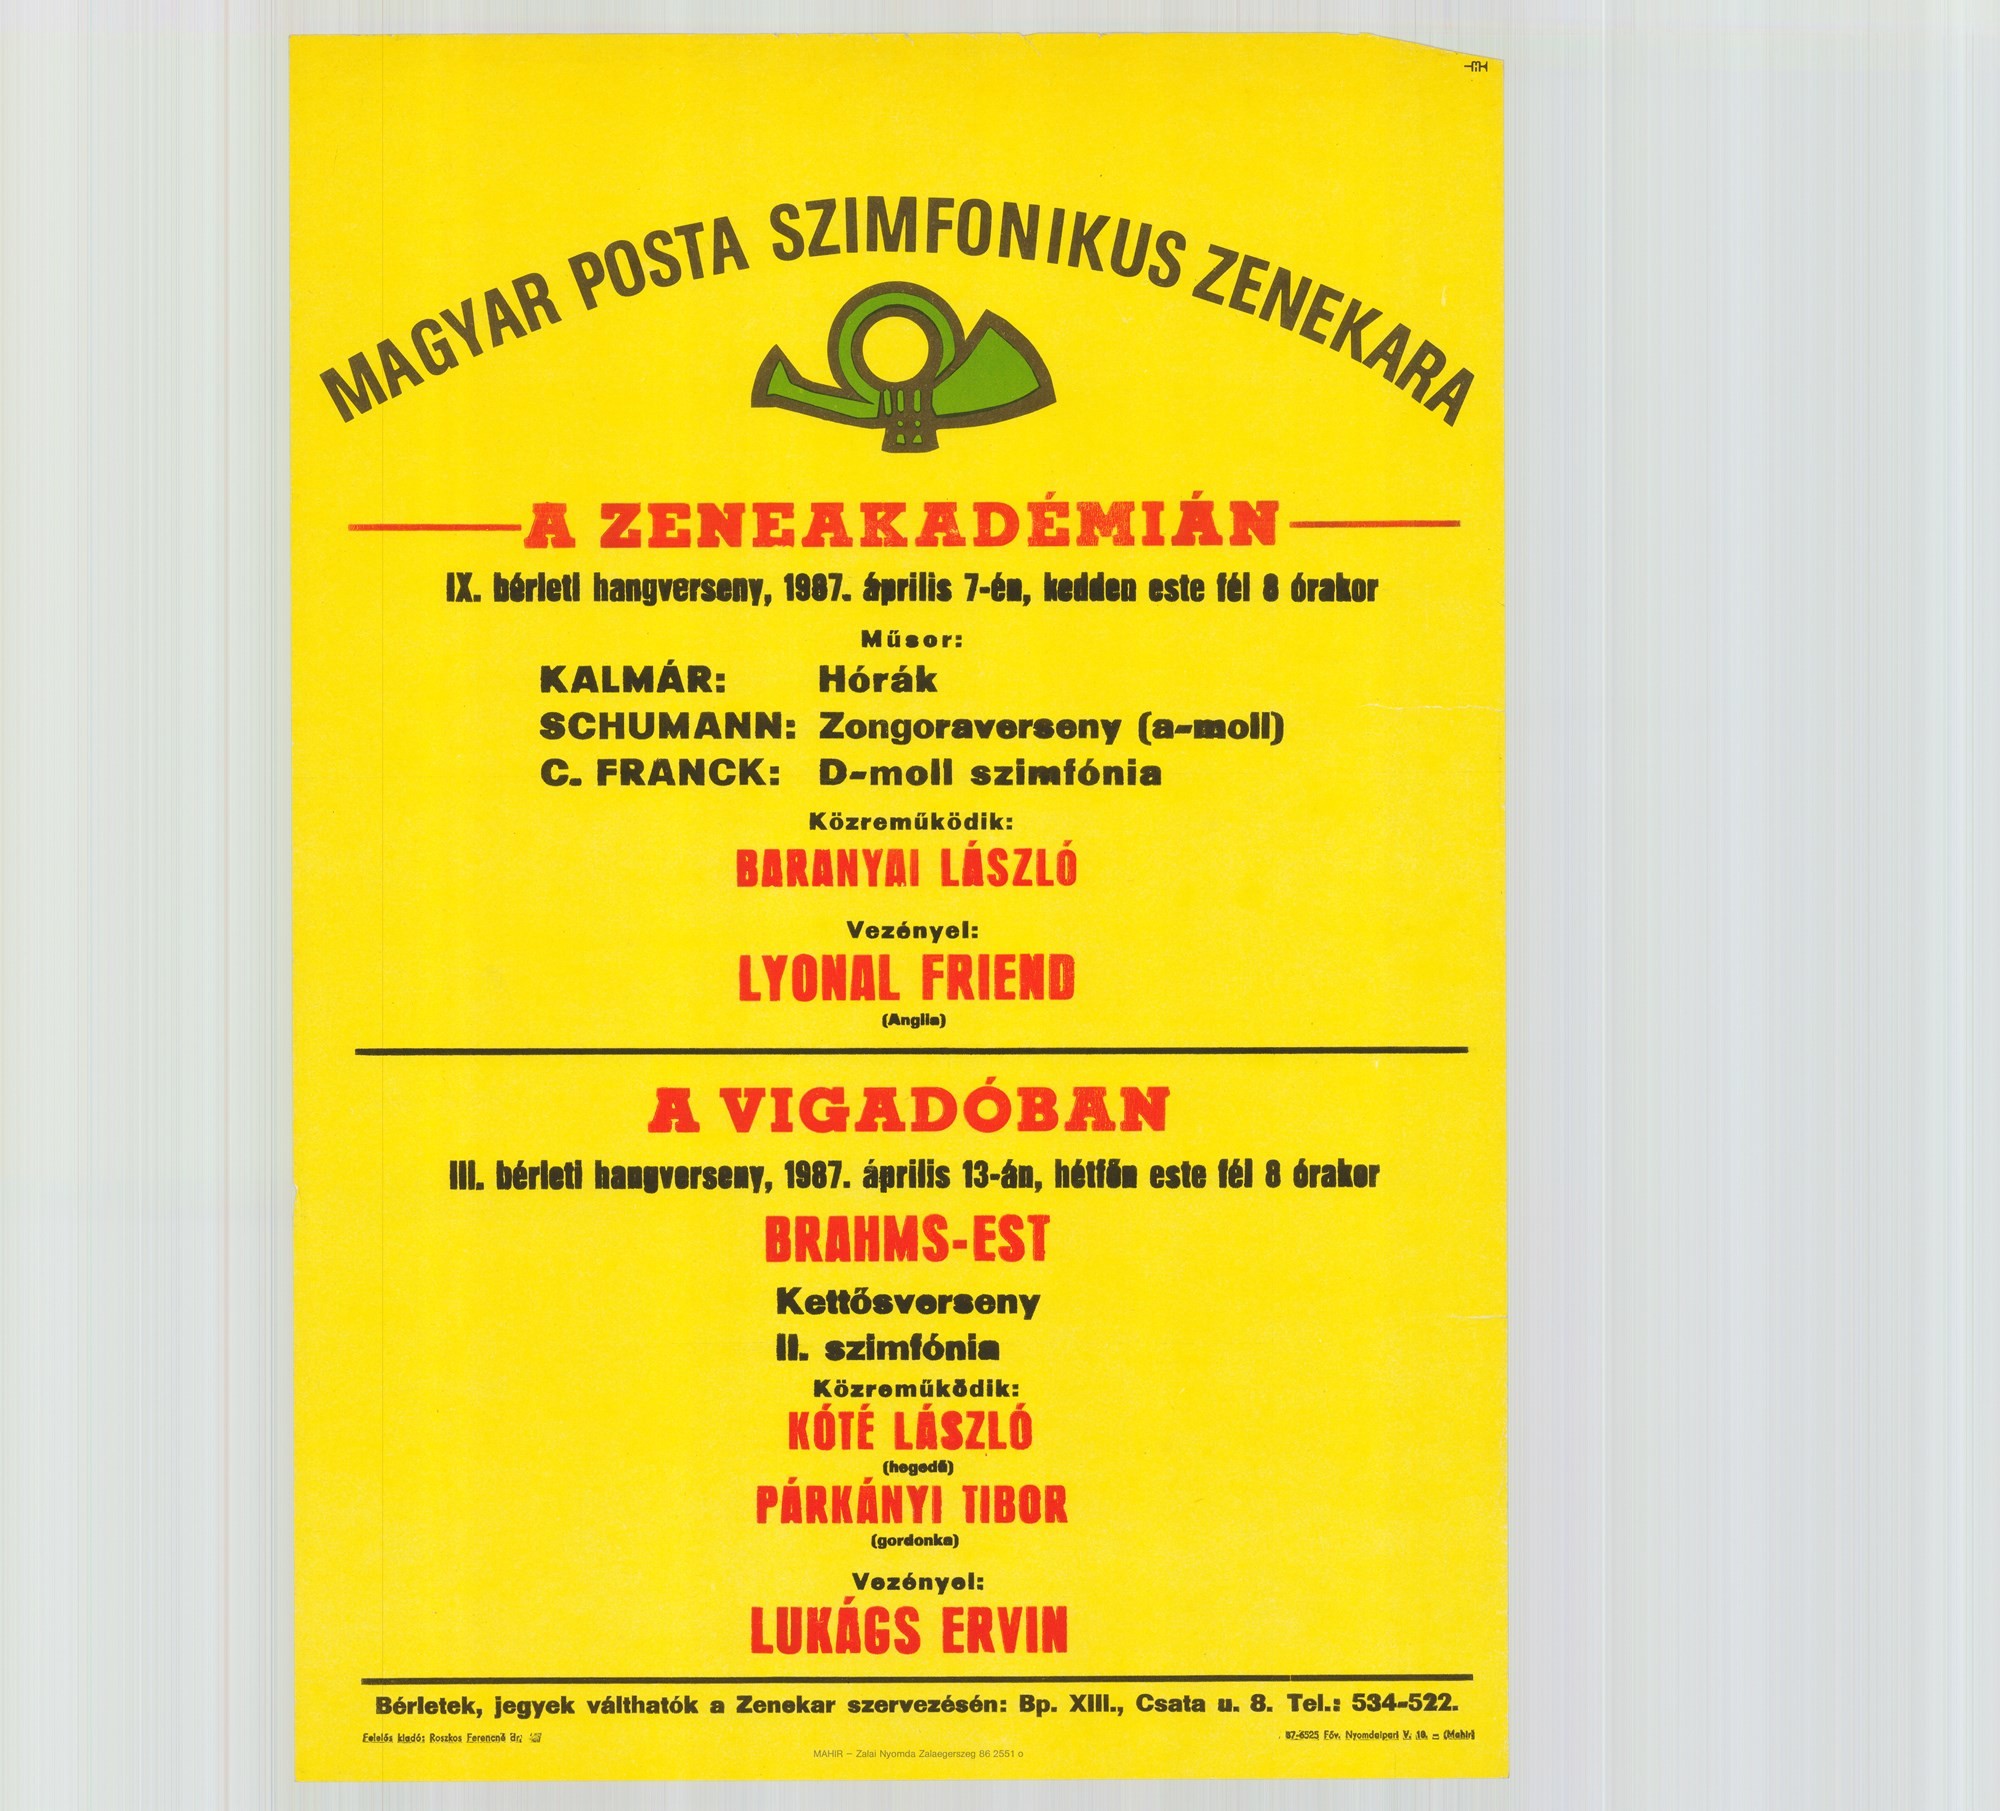 Plakát - Postás Szimfonikus Zenekar a Zeneakadémián és a Vigadóban, 1987 (Postamúzeum CC BY-NC-SA)